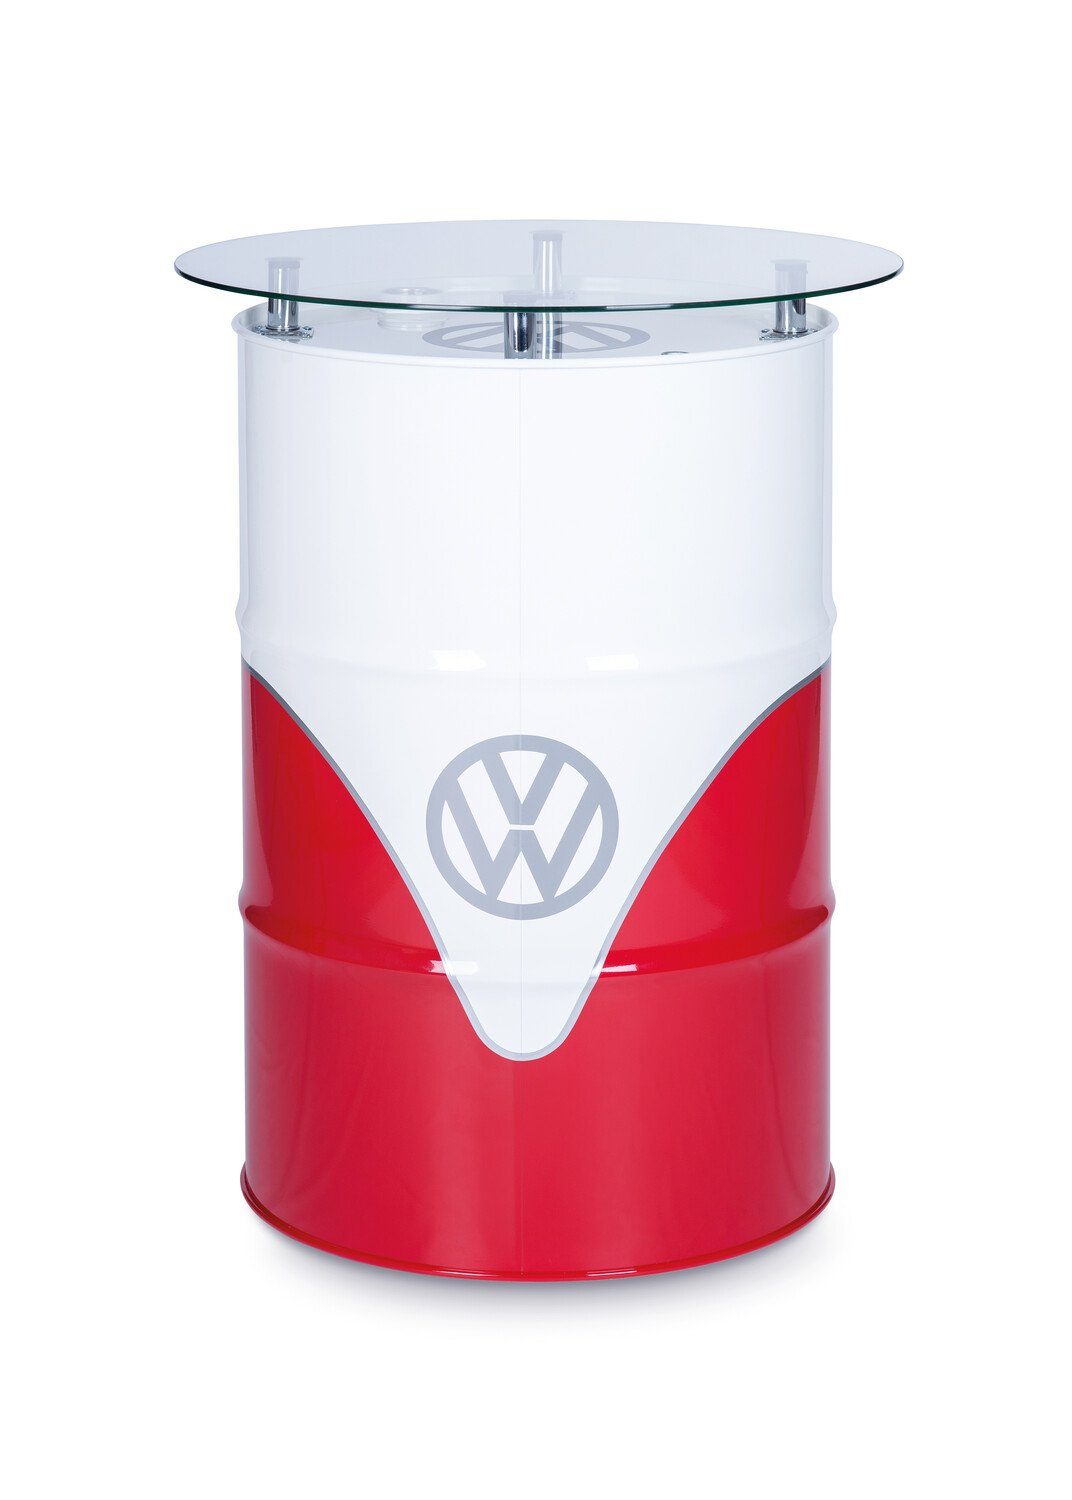 T1 Dekofass by Beistelltisch BRISA Volkswagen Collection & VW Bulli weiß in Design, Rot&Weiß Vintage Stehtisch pflegeleichtes Hochglanz/ rot im